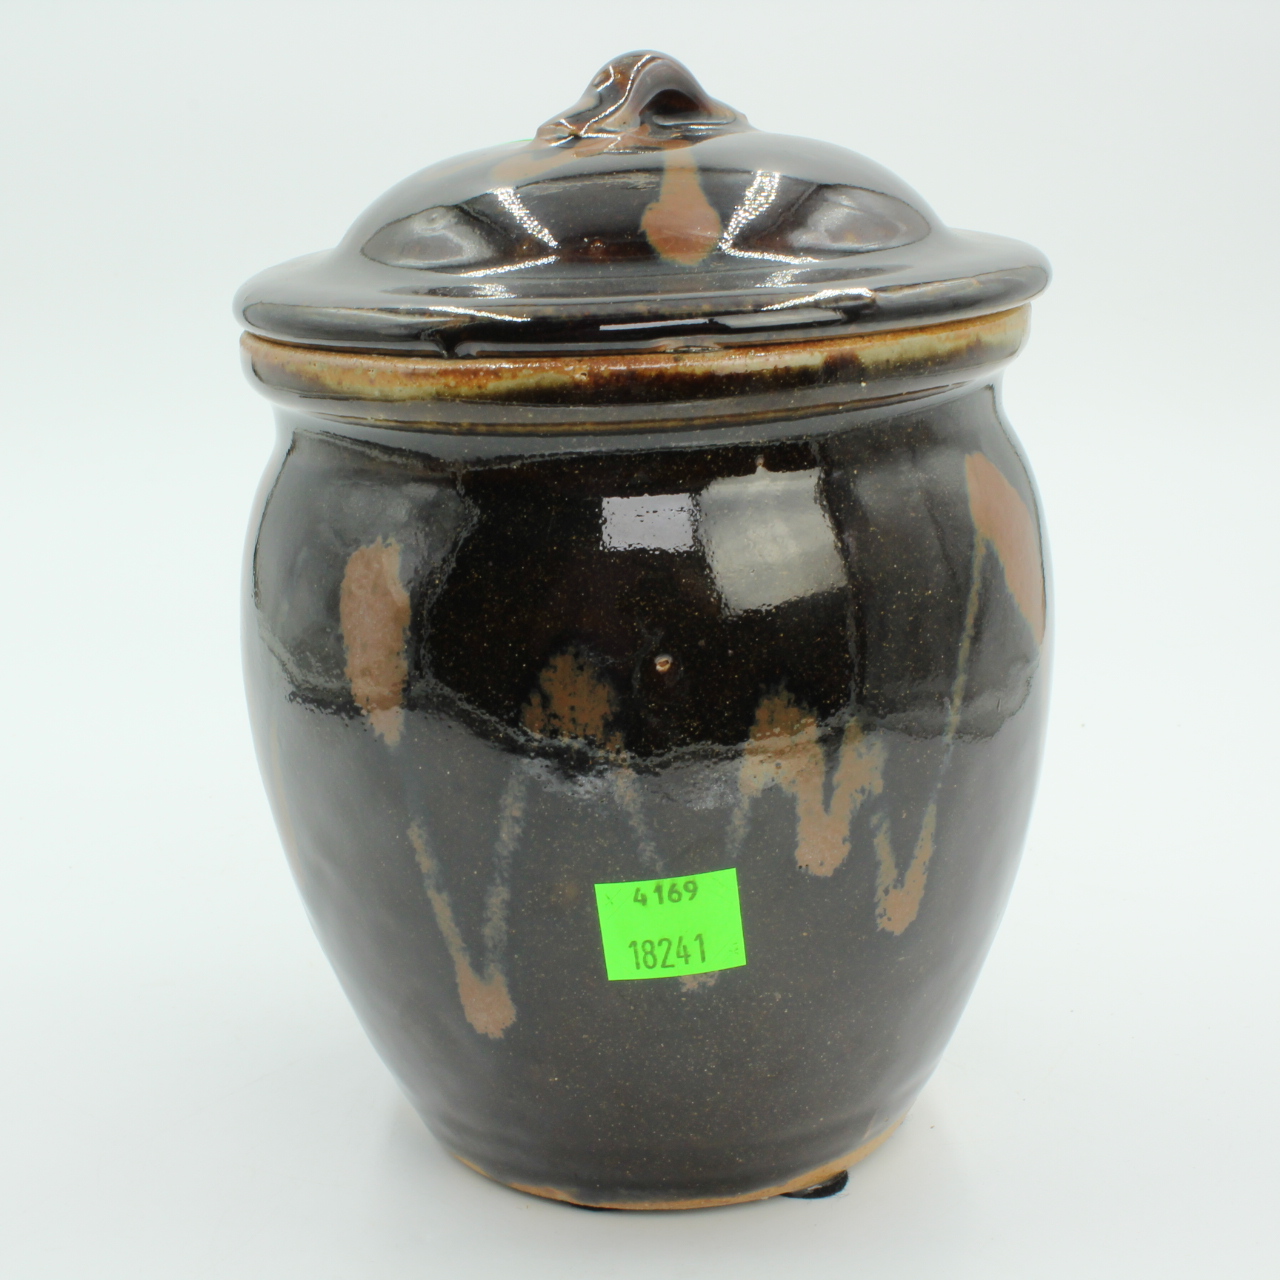 Vintage Japanese Jar, Art Pottery Tea Jar